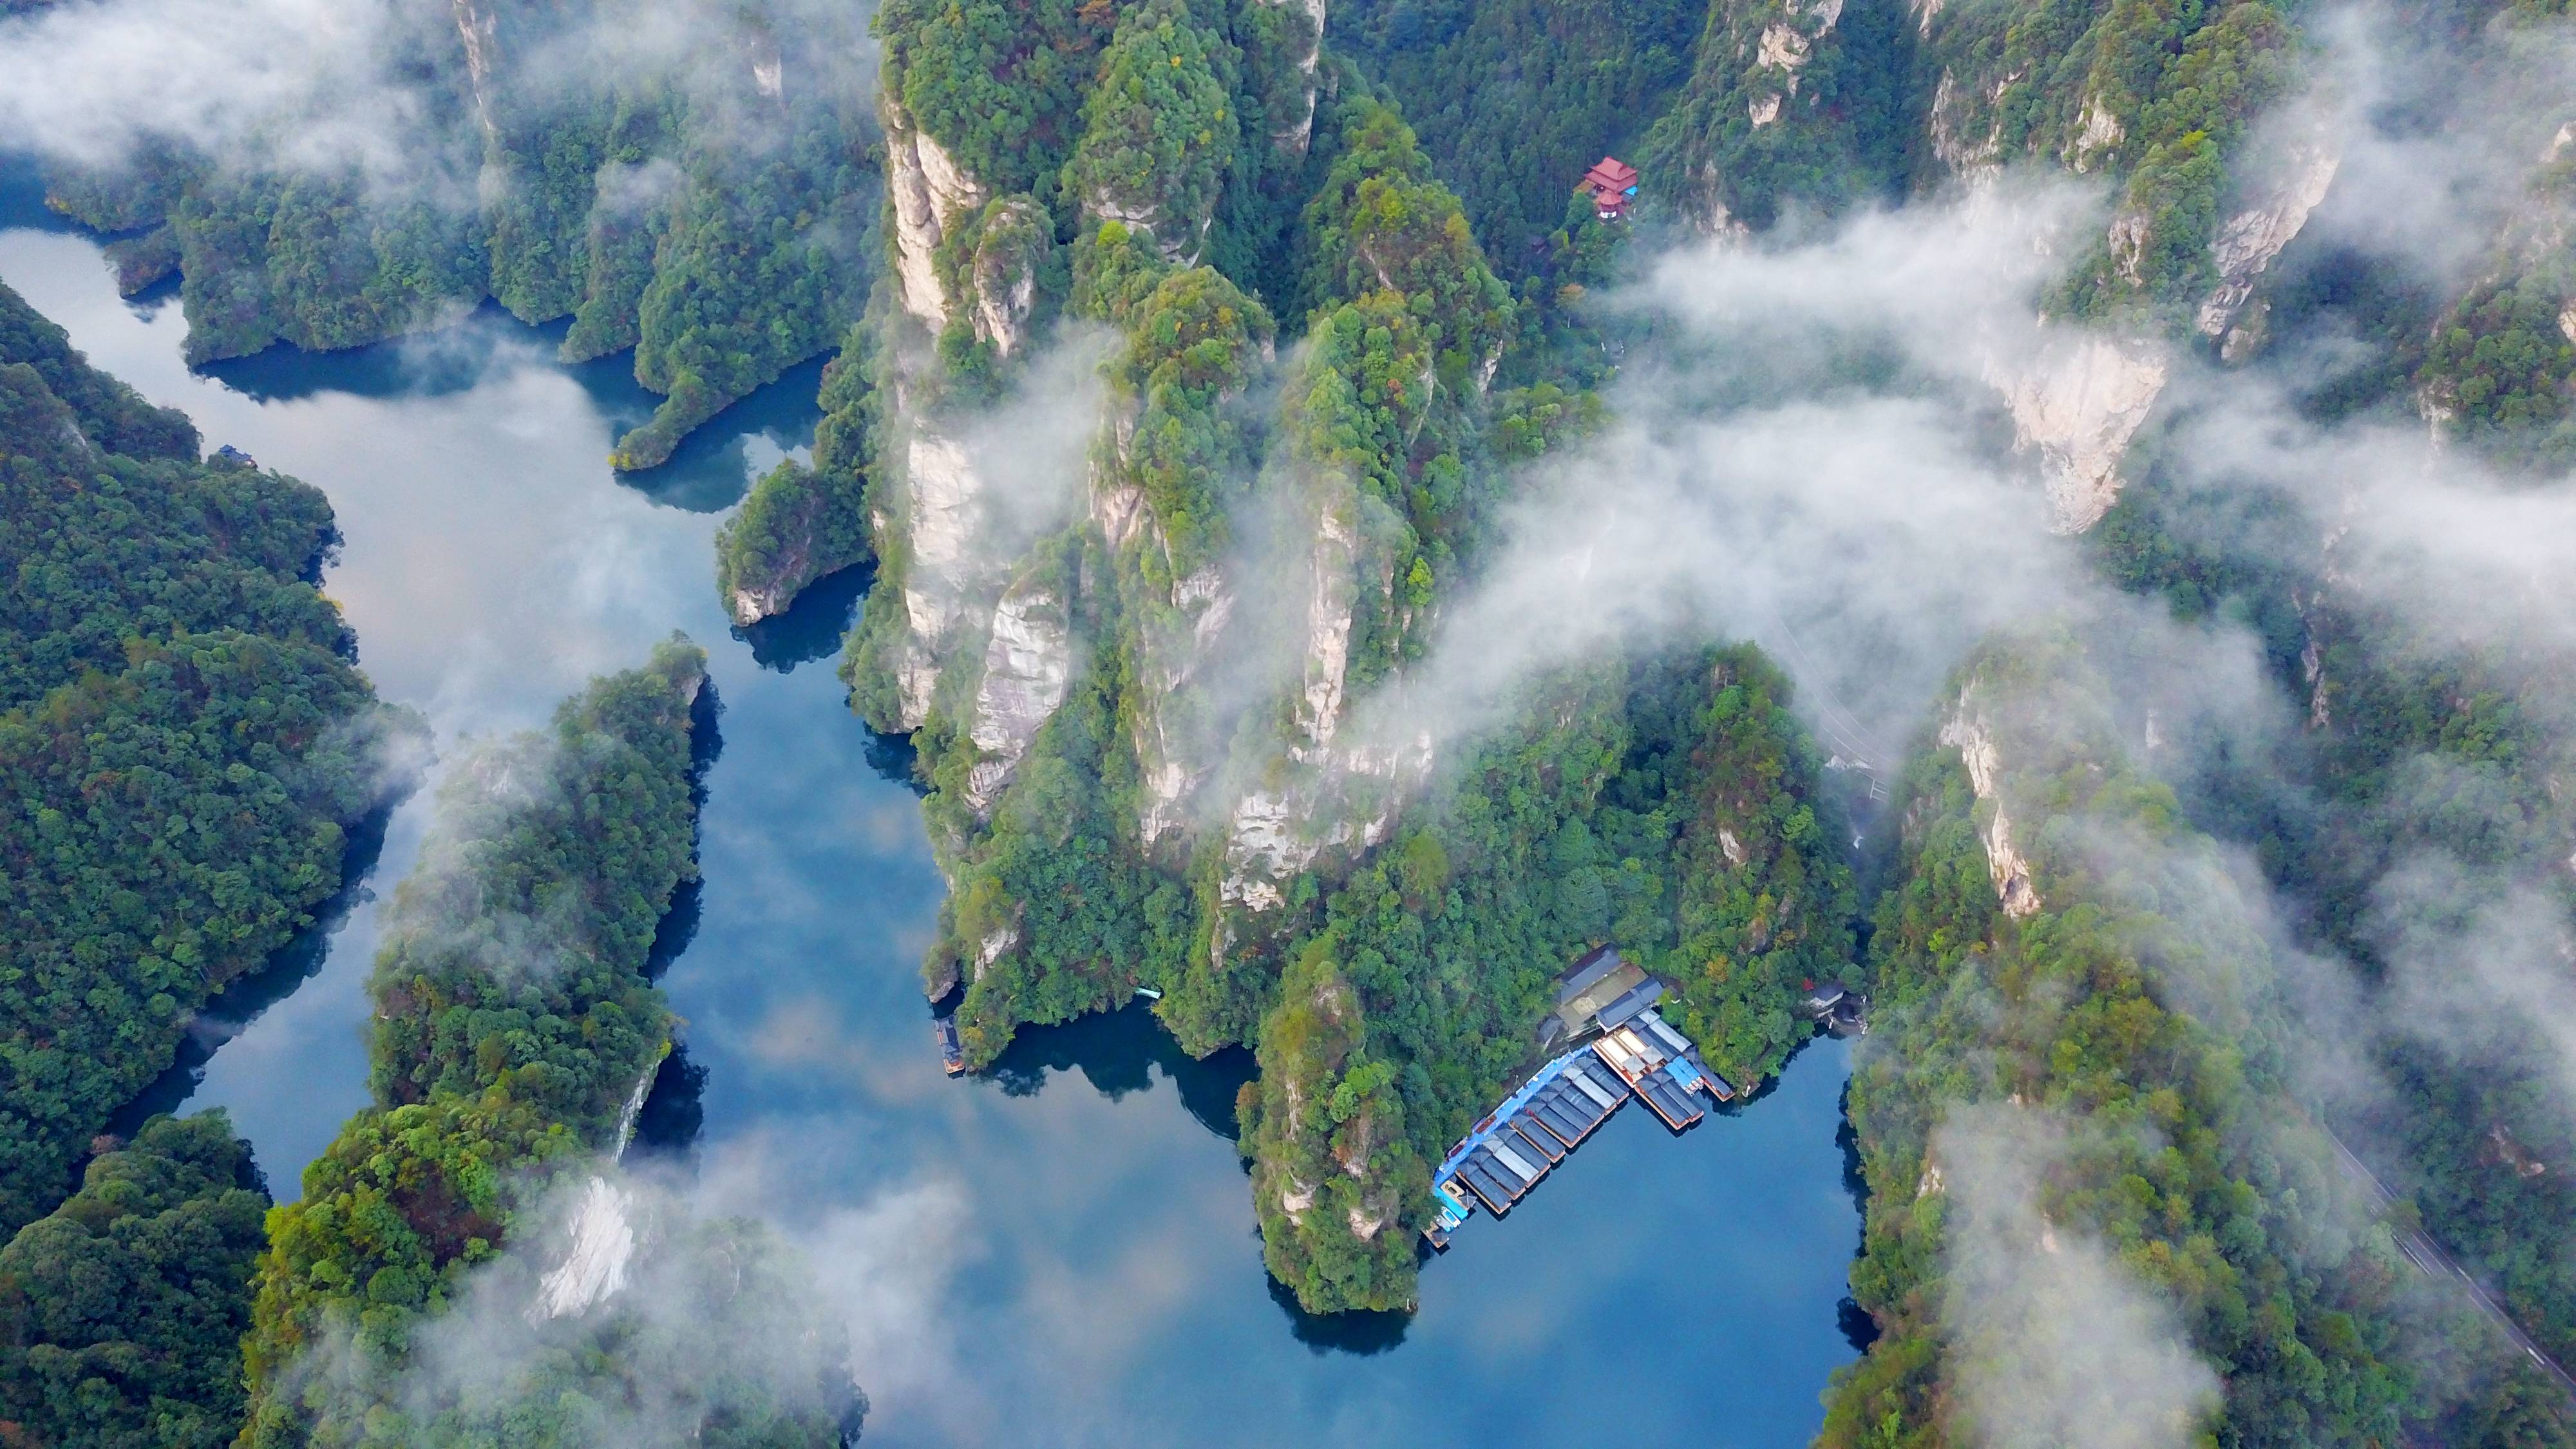 2023年11月16日,世界自然遗产,世界地质公园张家界宝峰湖景区雨后放晴